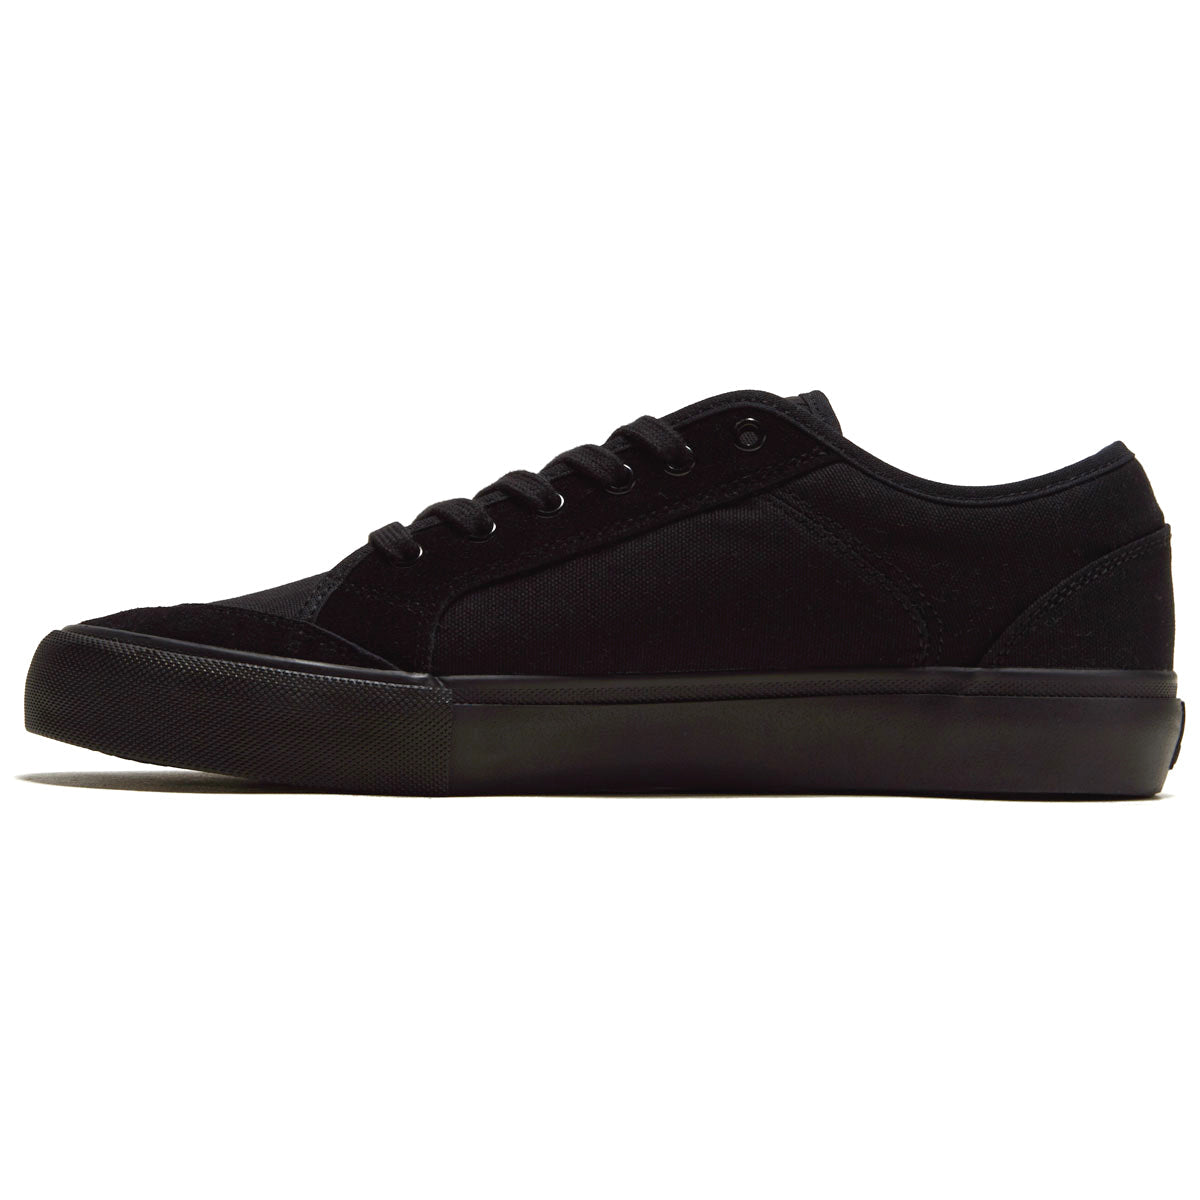 Opus Court Low Shoes - Black image 2